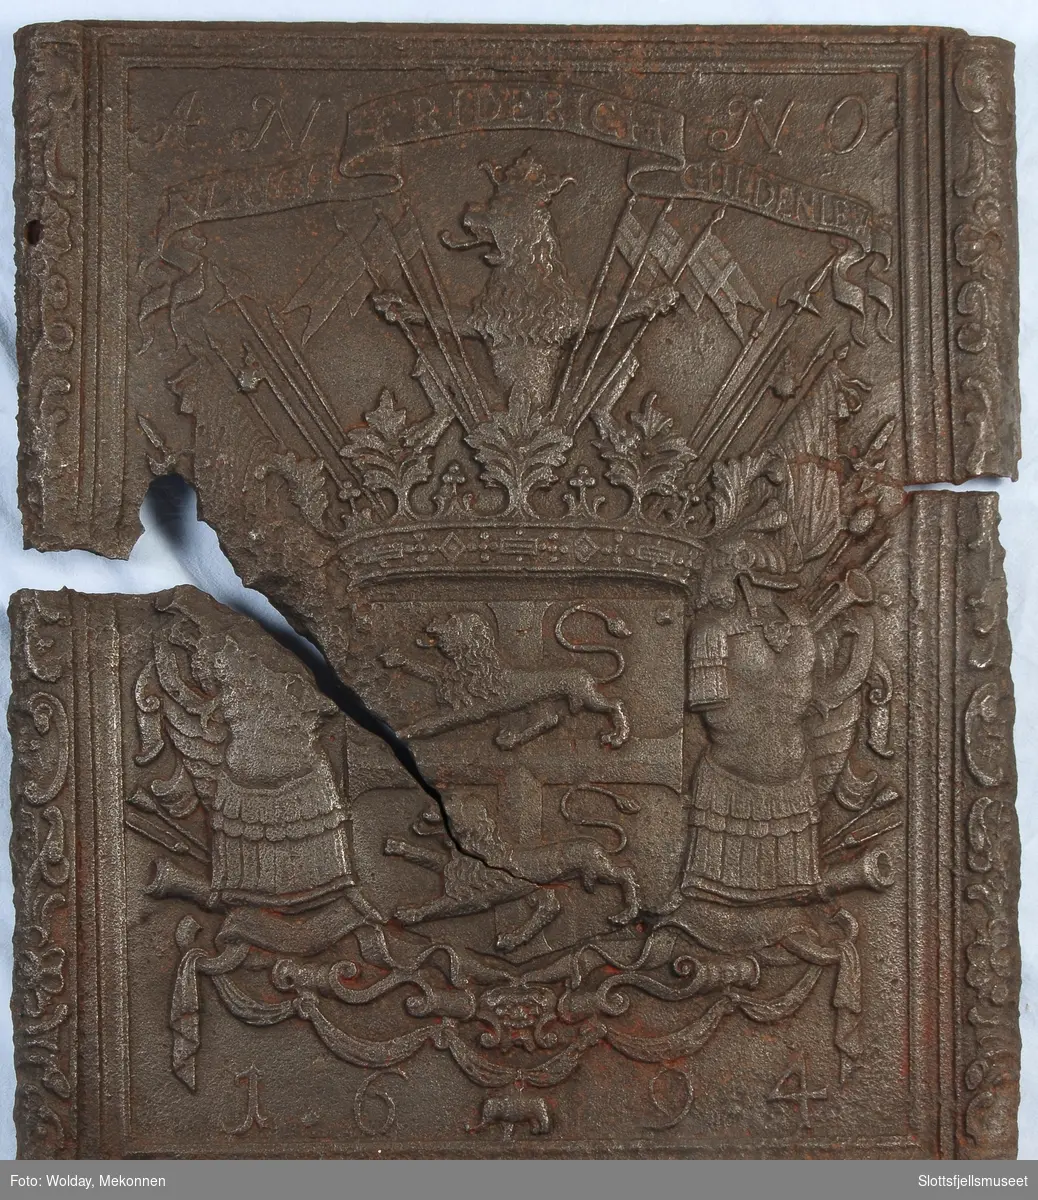 Gyldenløves våpern, omgitt av krigerske emblemer, derover på knekket bånd "ULRICH FRIDERICH"
nederst 1694